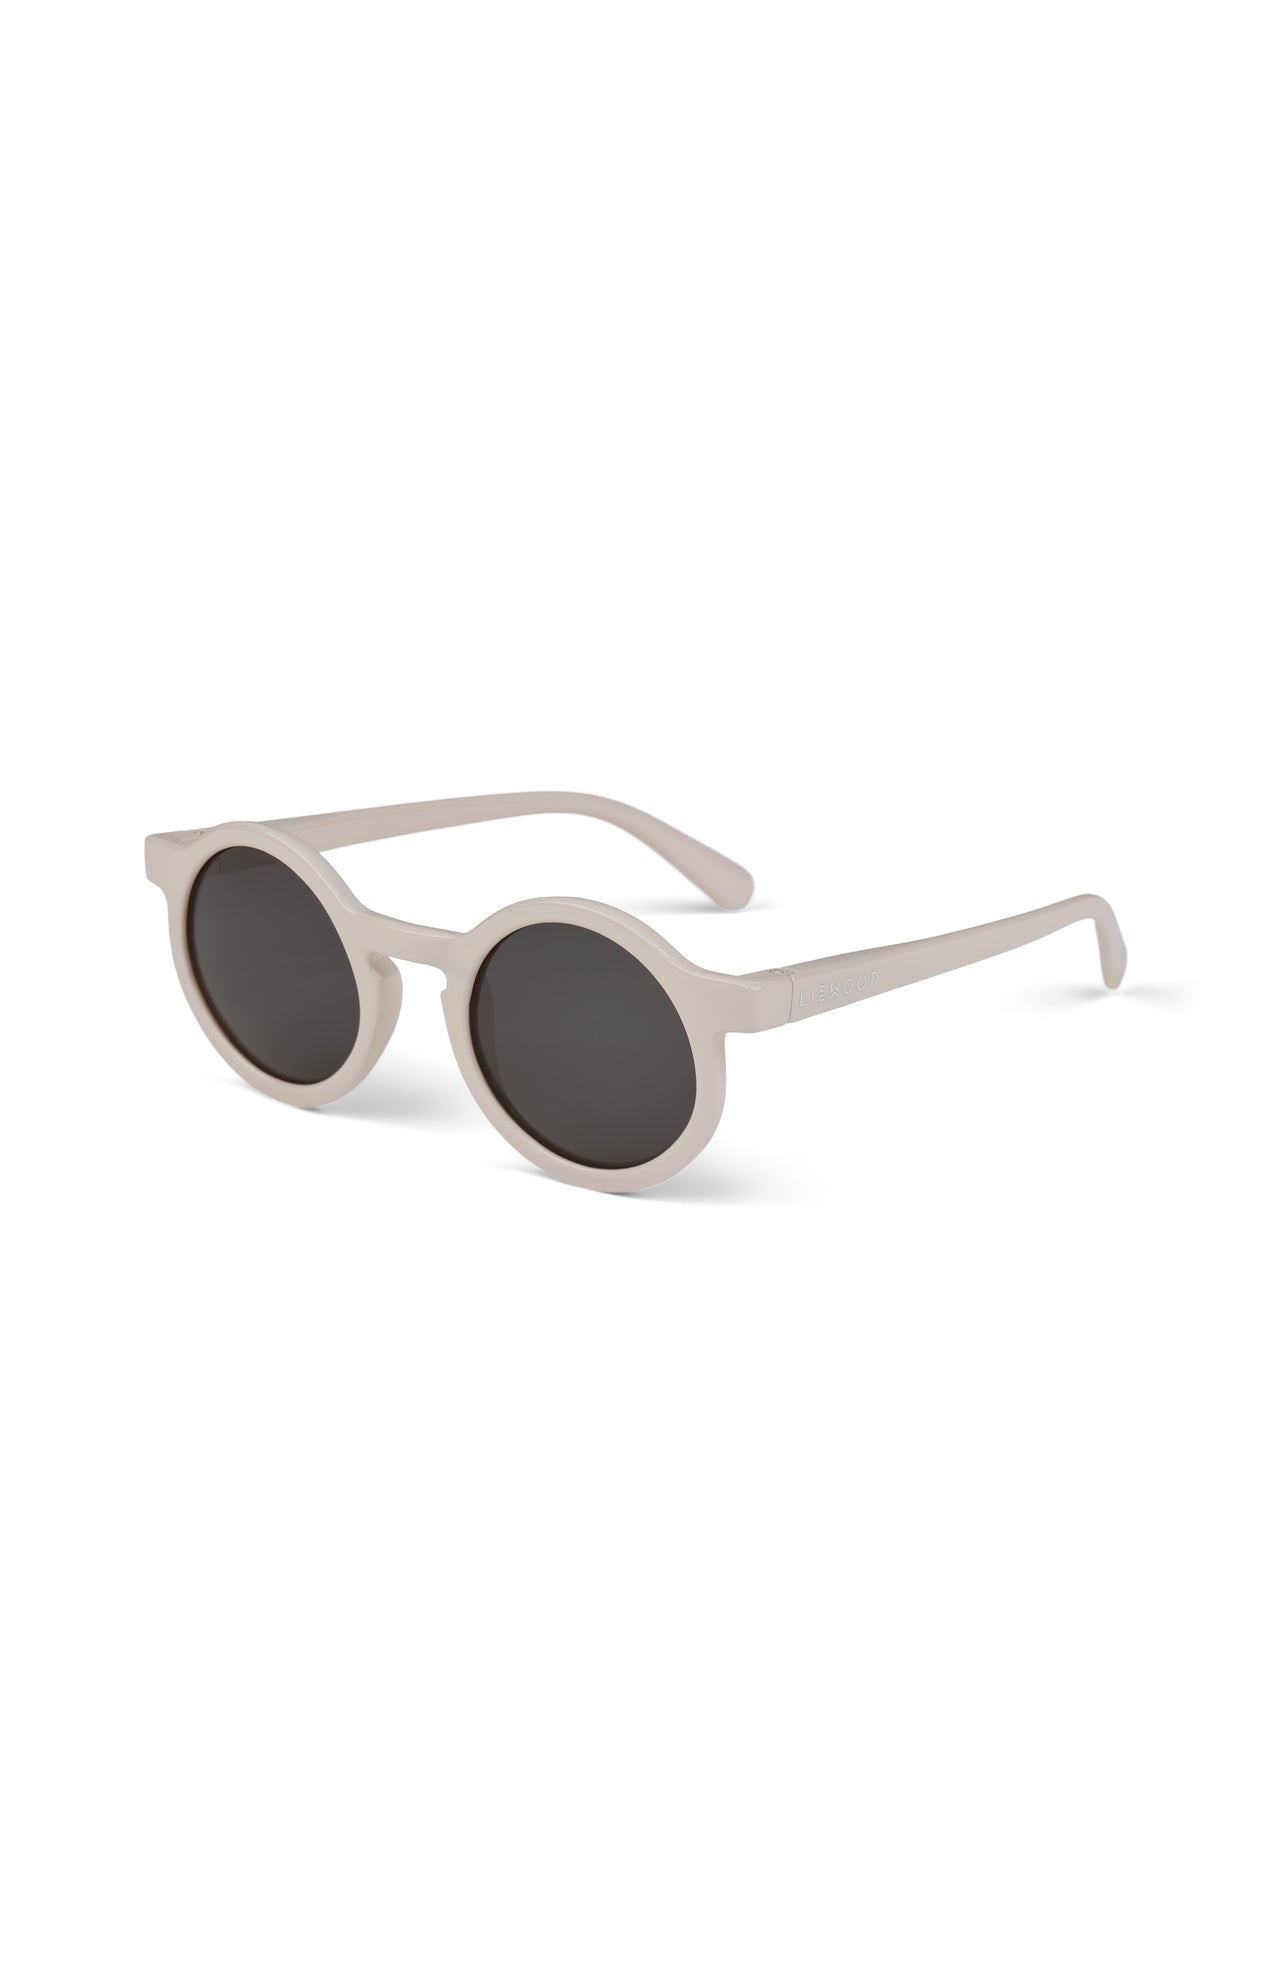 Liewood Sonnenbrille, Kinder 4 bis 10 Jahre, verschiedene Farben, UV-Schutz, stylisches Design, für sonnige Tage